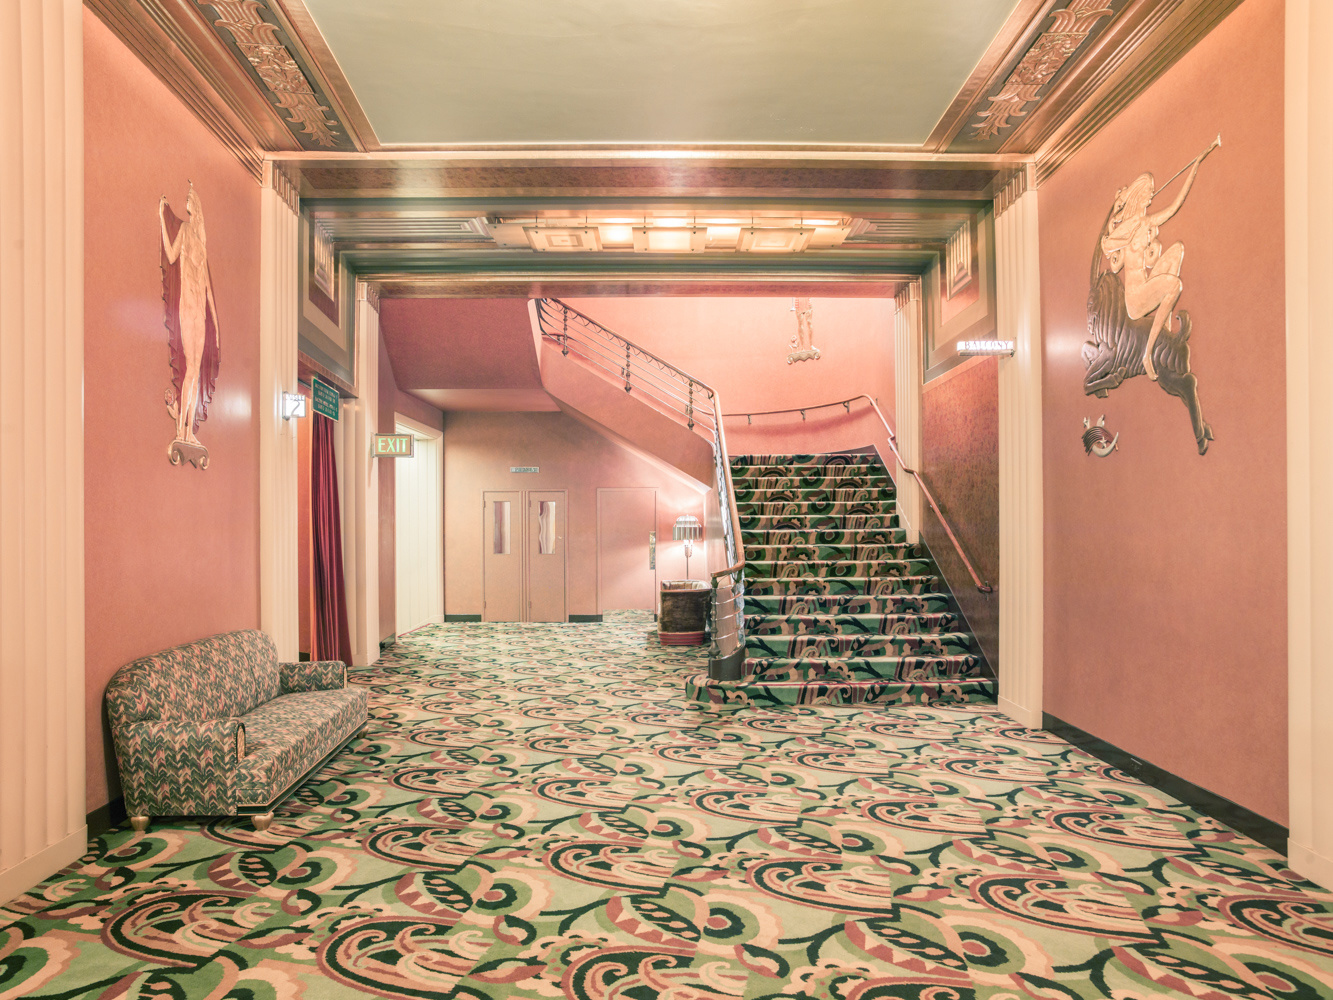 The Paramount Theatre, VI, Oakland, California, 2014